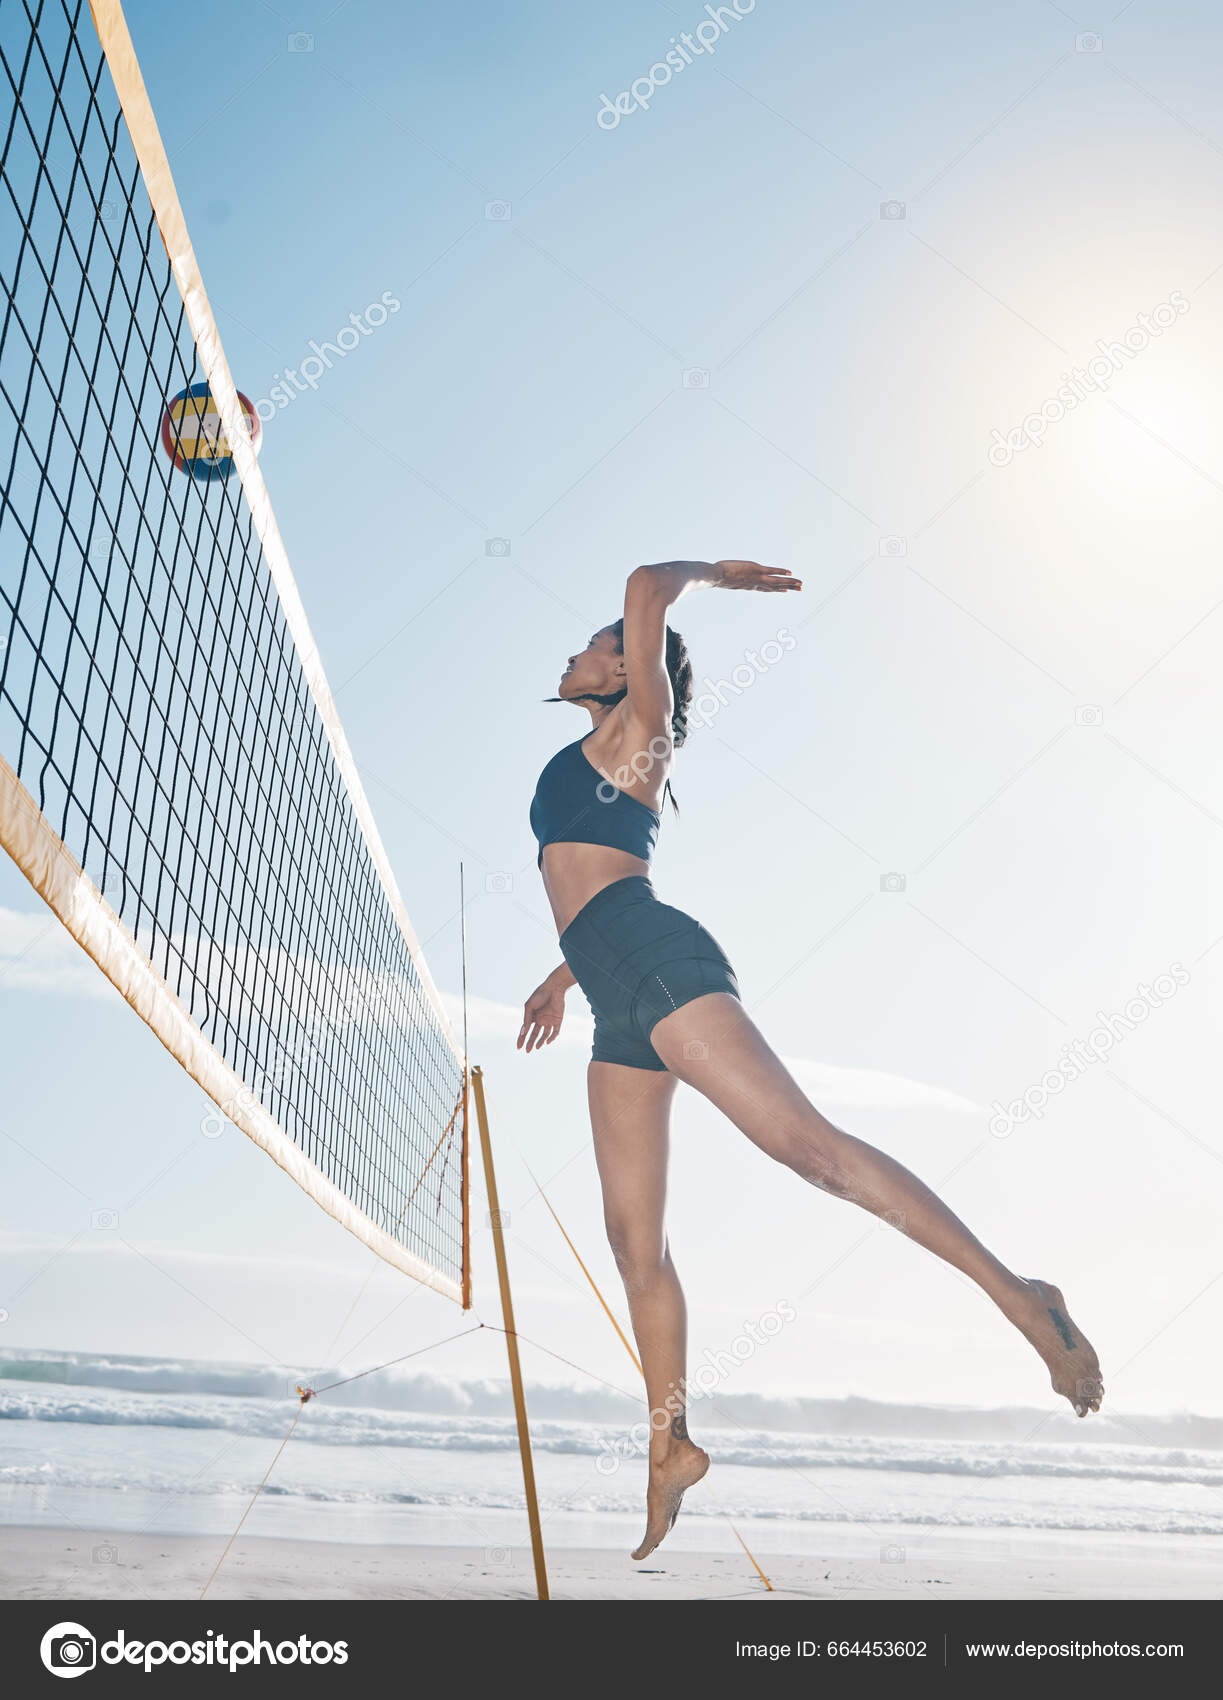 Woman Jump Volleyball Player Beach Net Serious Sports Match Game